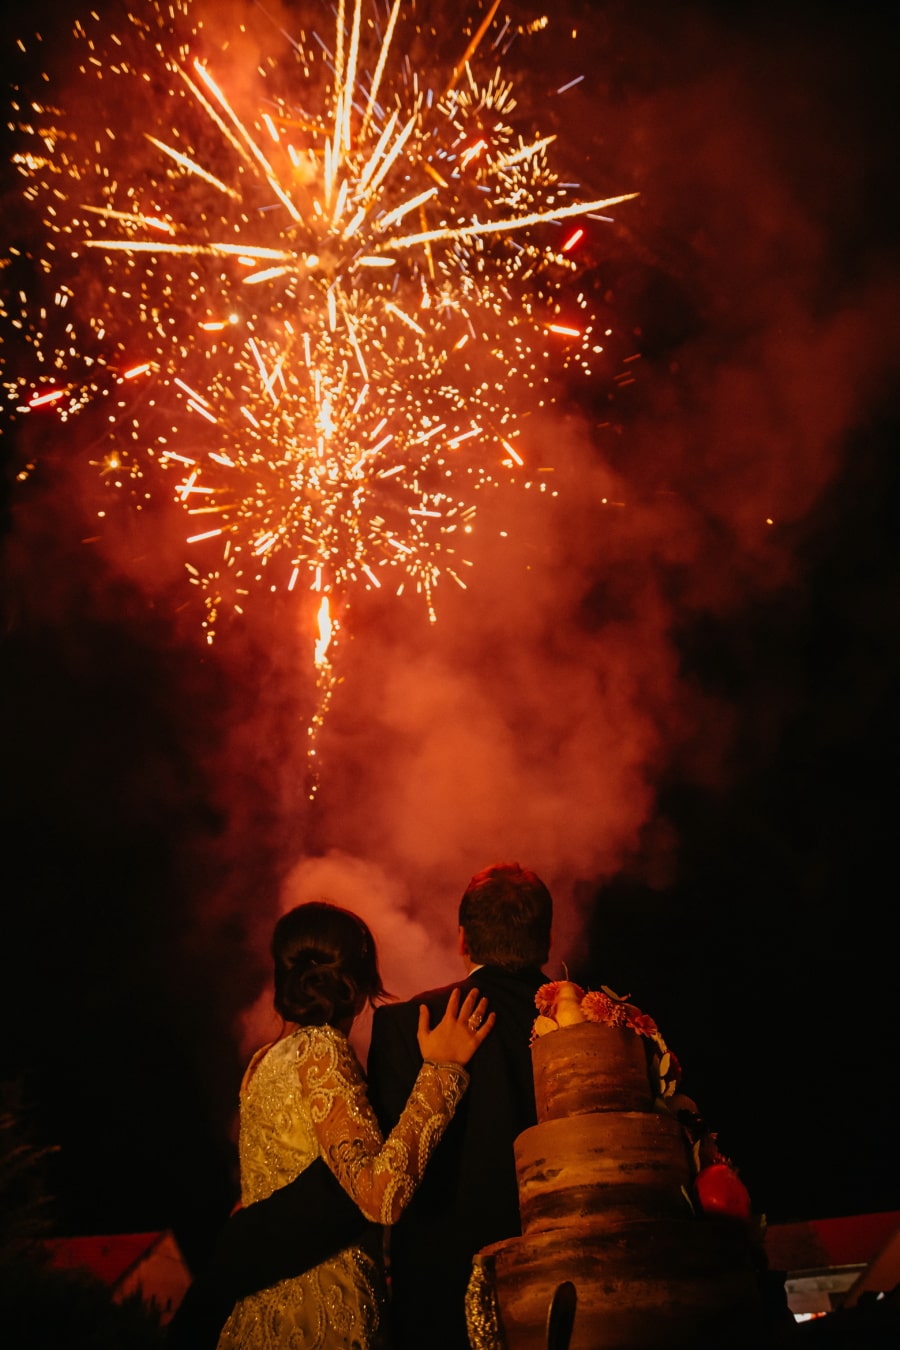 romantice, focuri de artificii, prietenul, prietena, îmbrăţişarea, Festivalul, sărbătoare, fum, lumânare, explozie